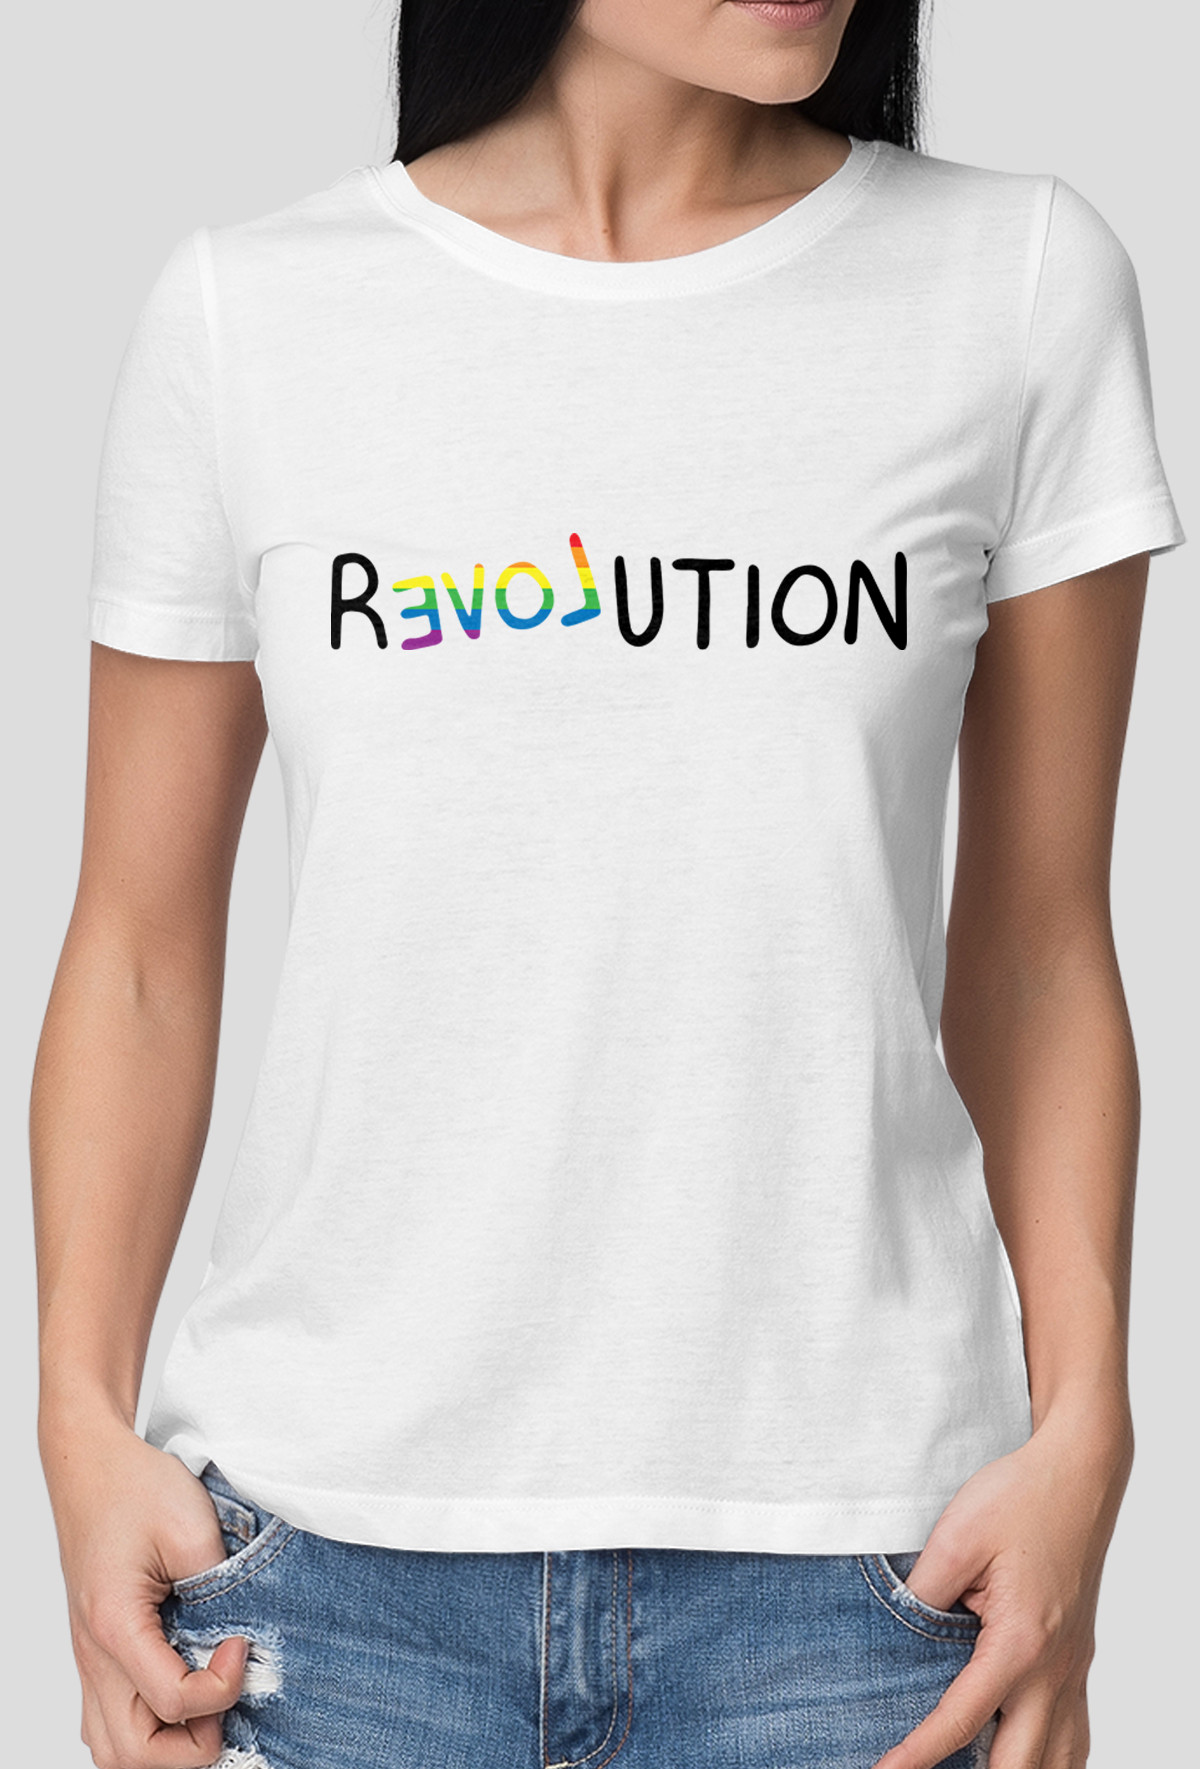 Koszulka - Revolution (Oryginalny Prezent)